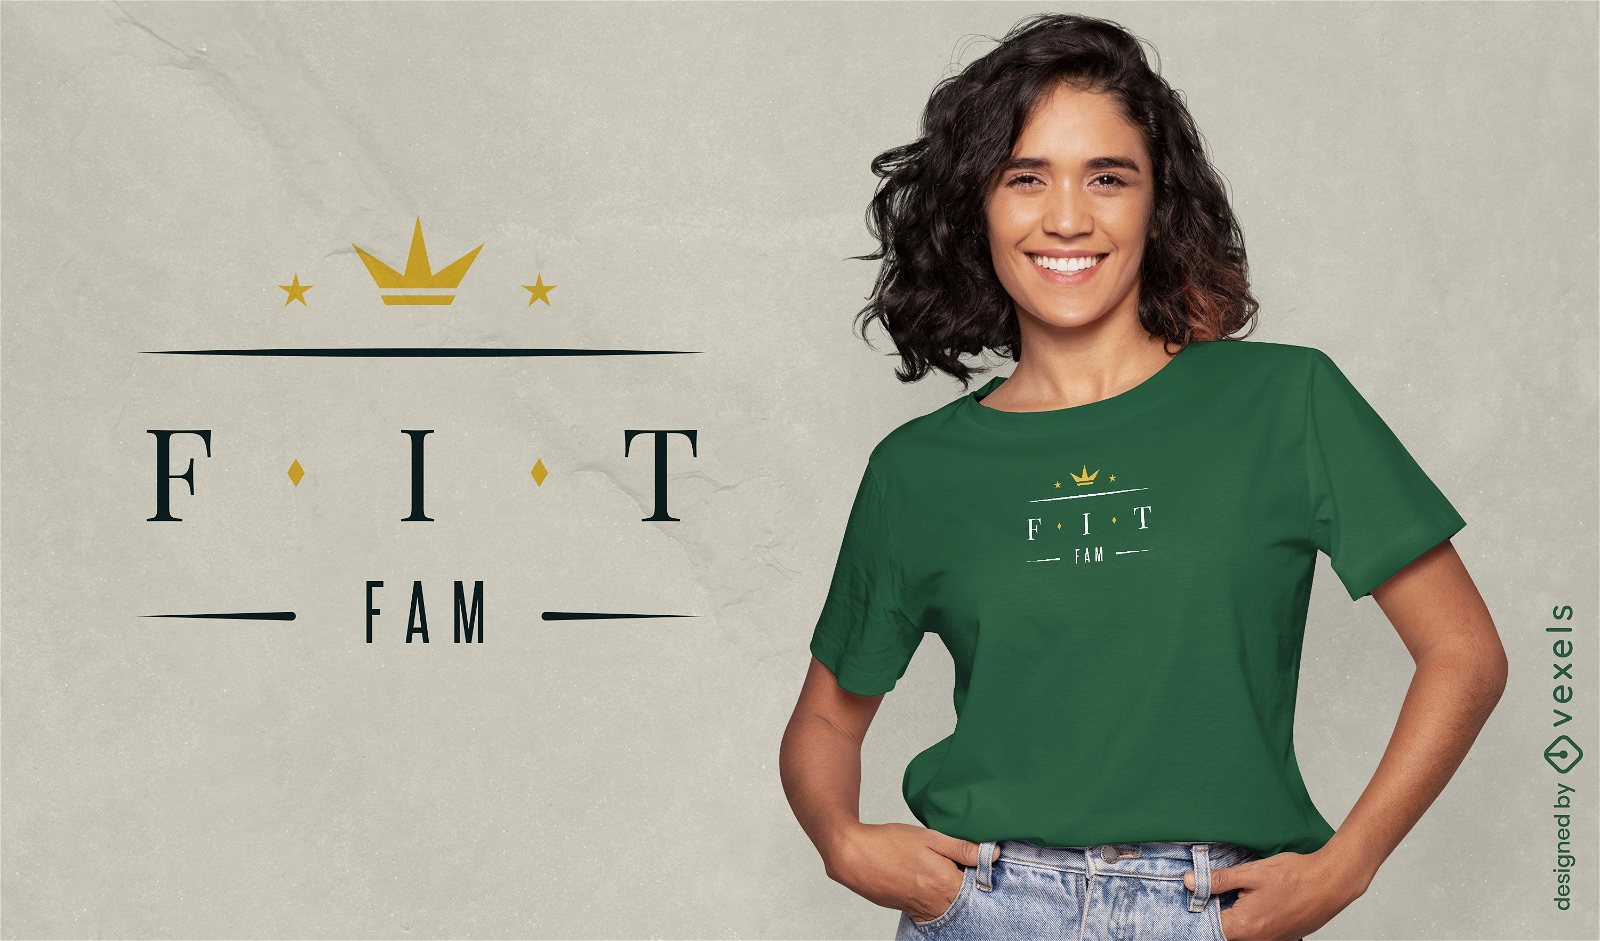 Fit fam sport quote t-shirt design